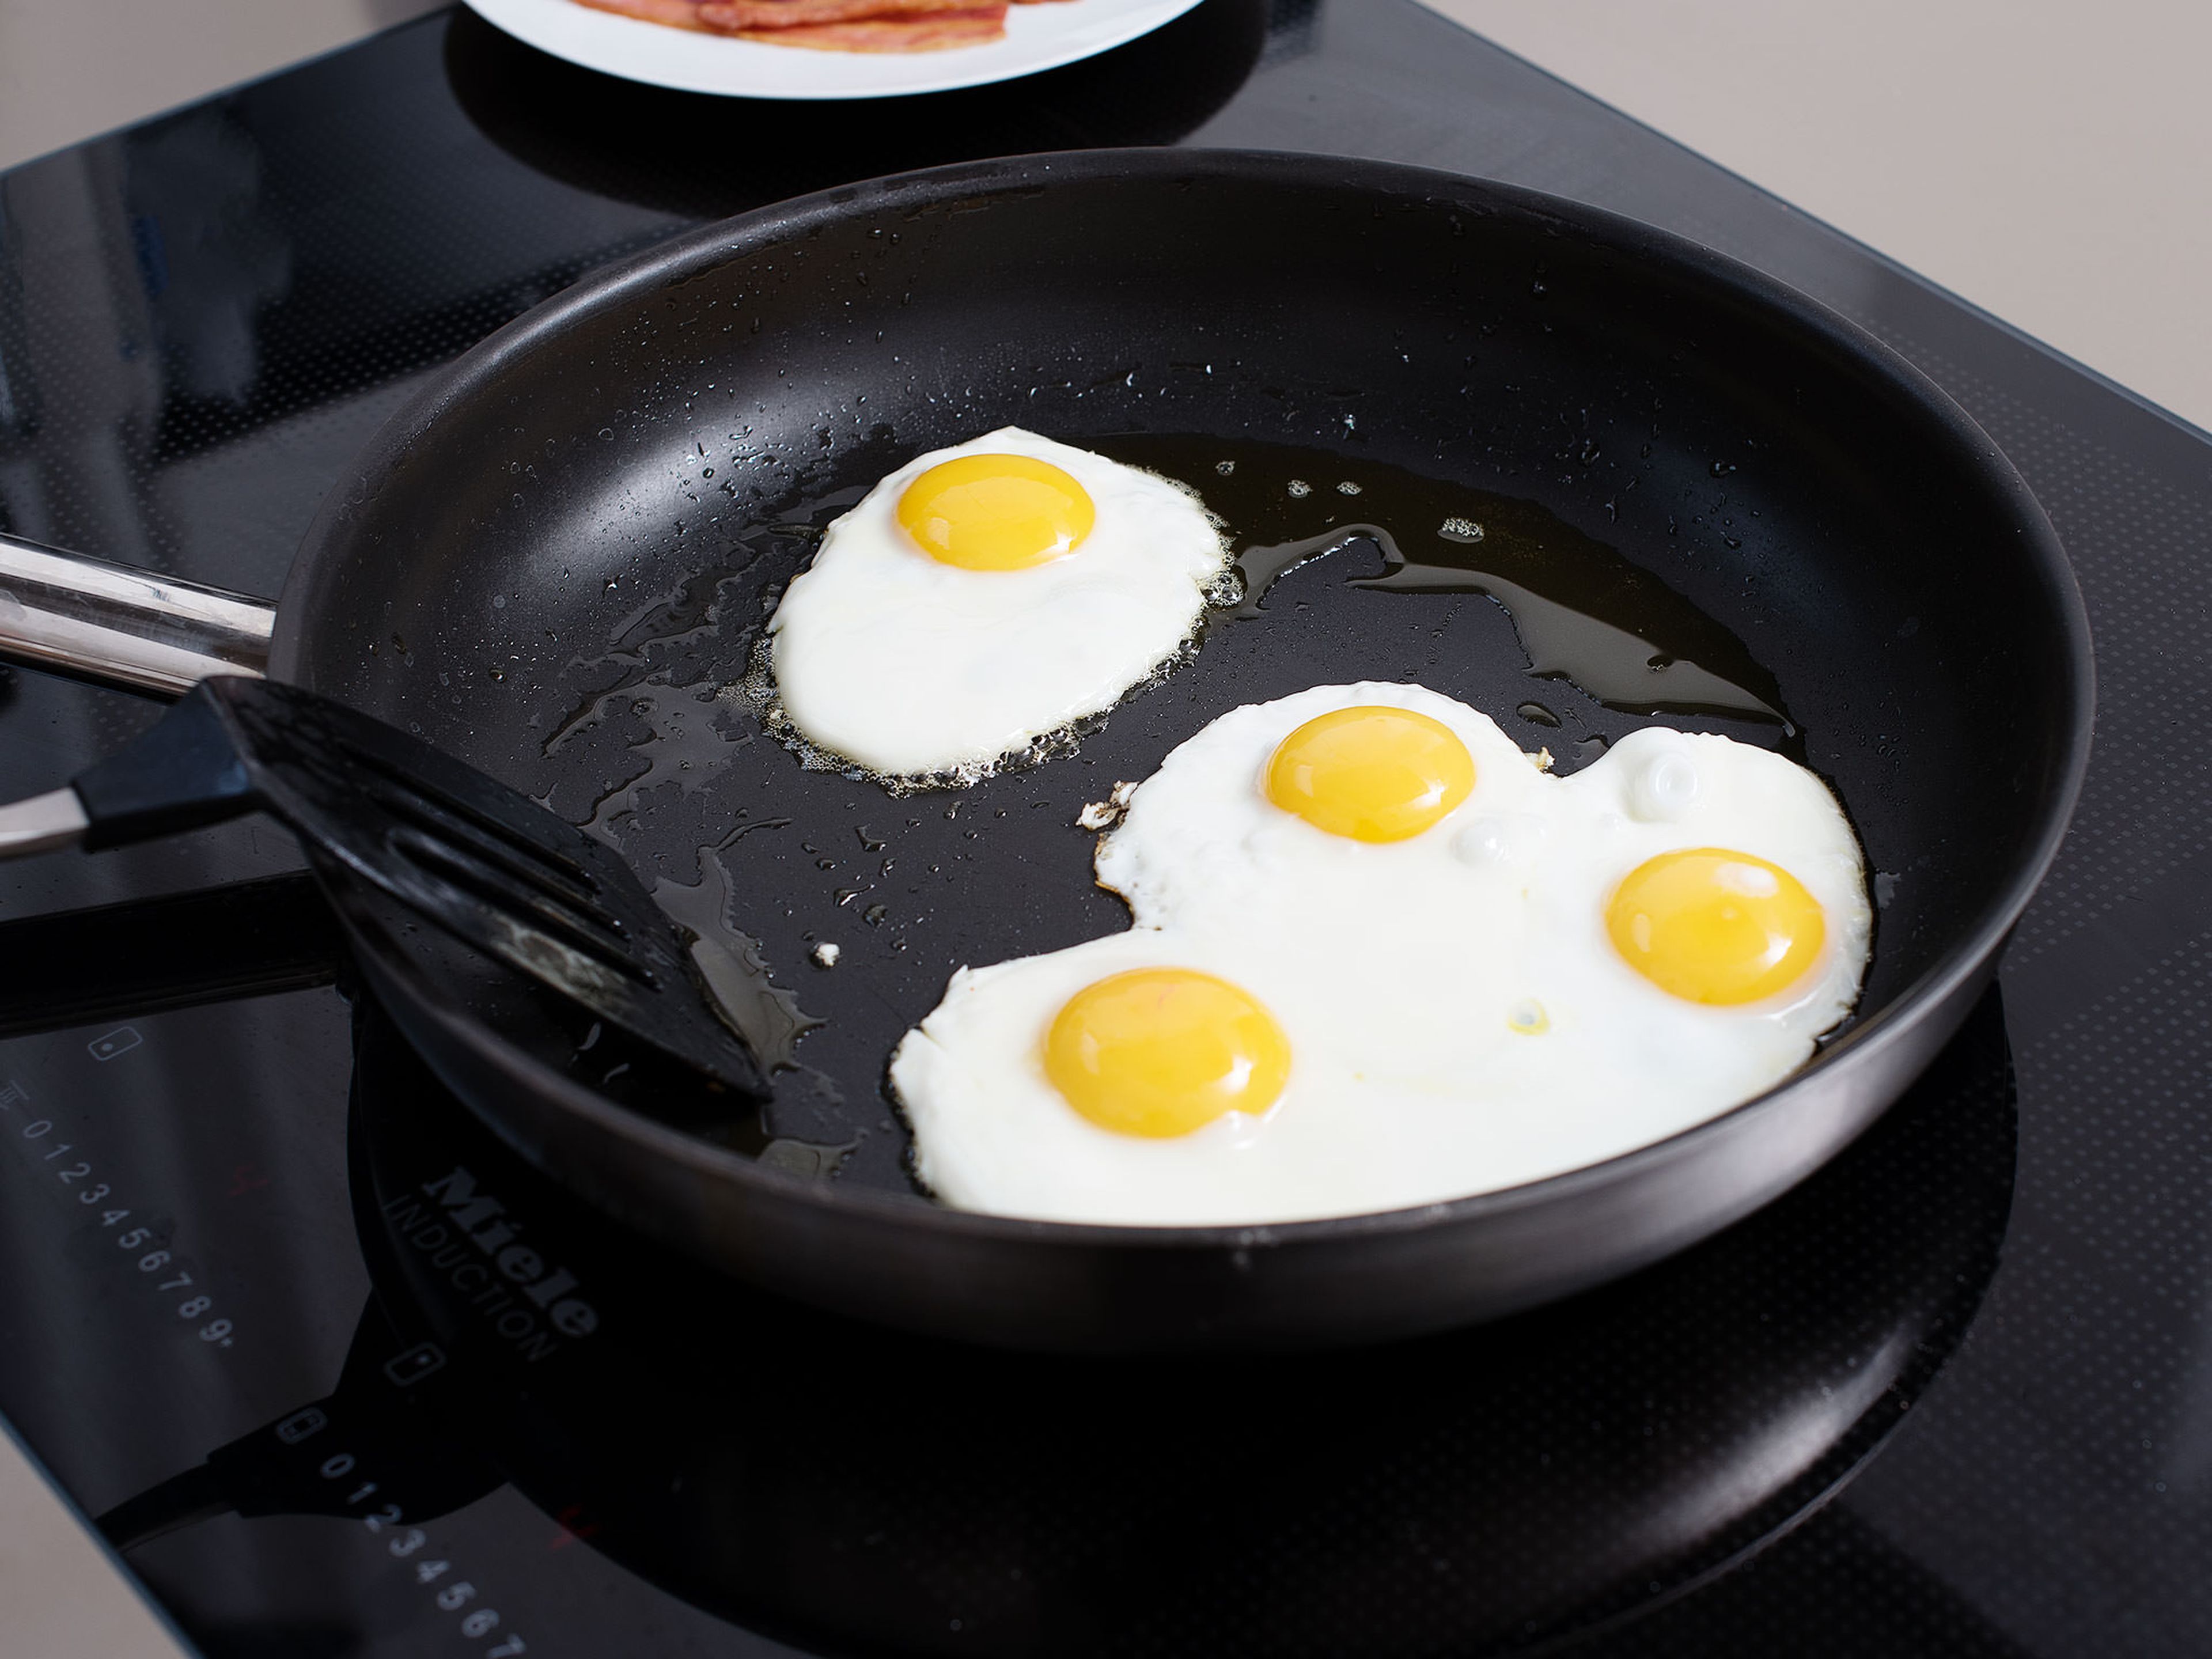 In einer zweiten Pfanne etwas Öl erhitzen und die Eier ca. 3 – 4 Min. zu Spiegeleiern braten. Das Eigelb sollte noch leicht flüssig und die Ränder schön knusprig sein. Mit Salz und Pfeffer abschmecken. Aus der Pfanne nehmen und beiseitestellen.